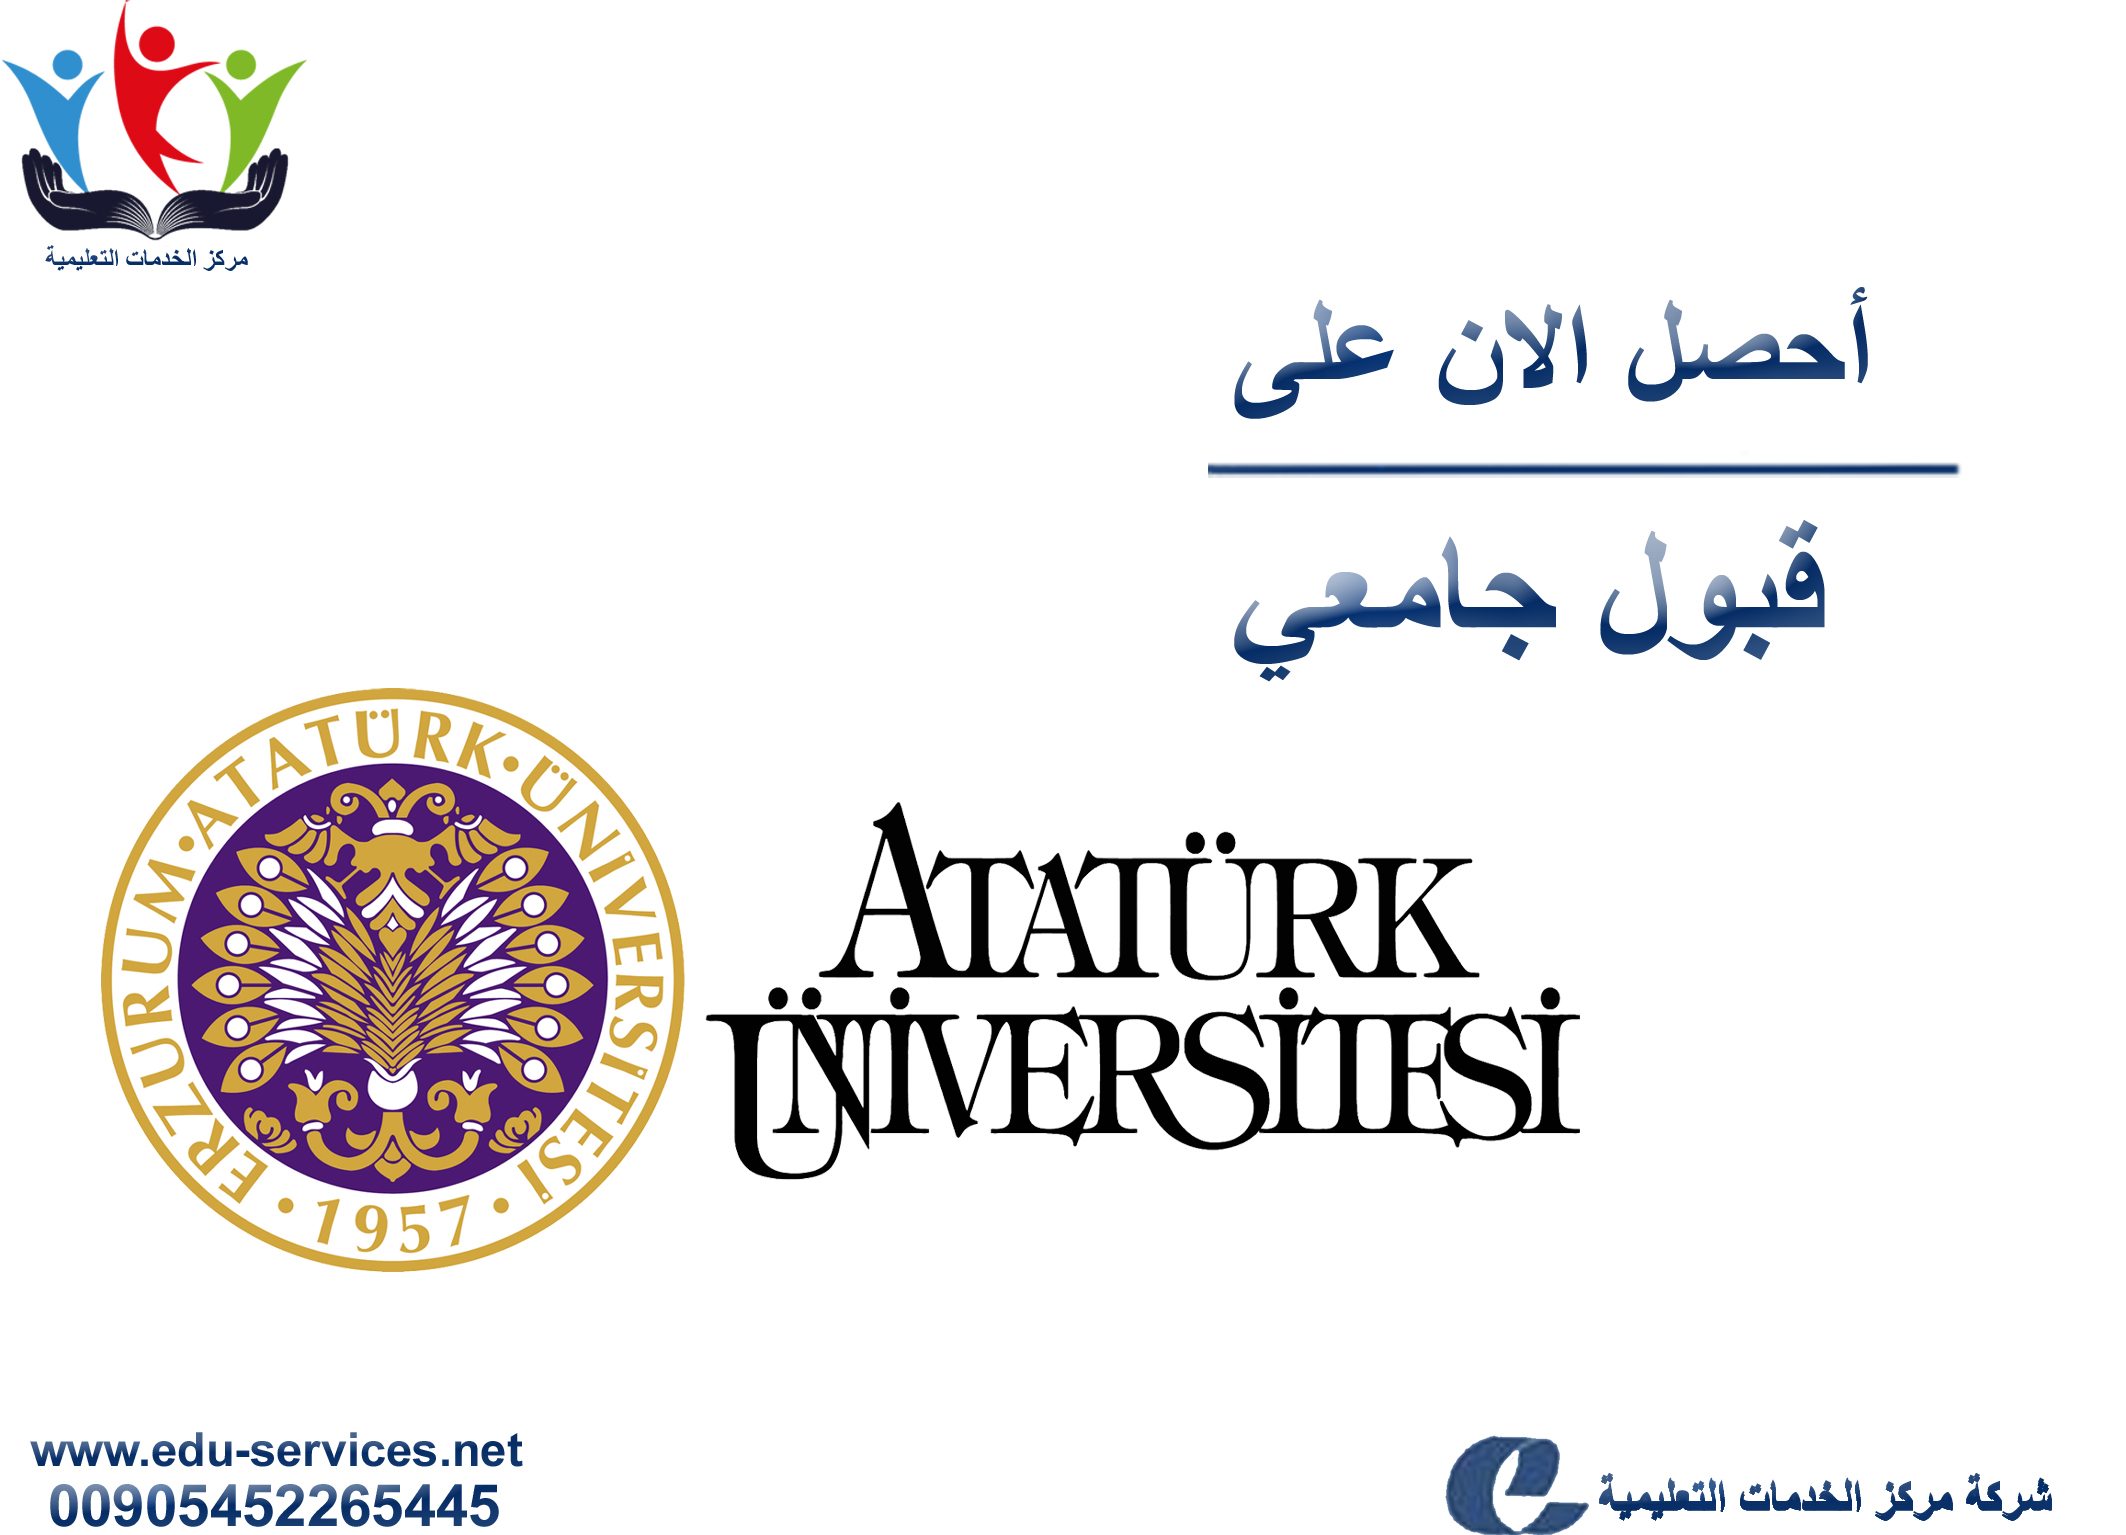 افتتاح التسجيل في جامعة أتاتورك للعام 2018-2019